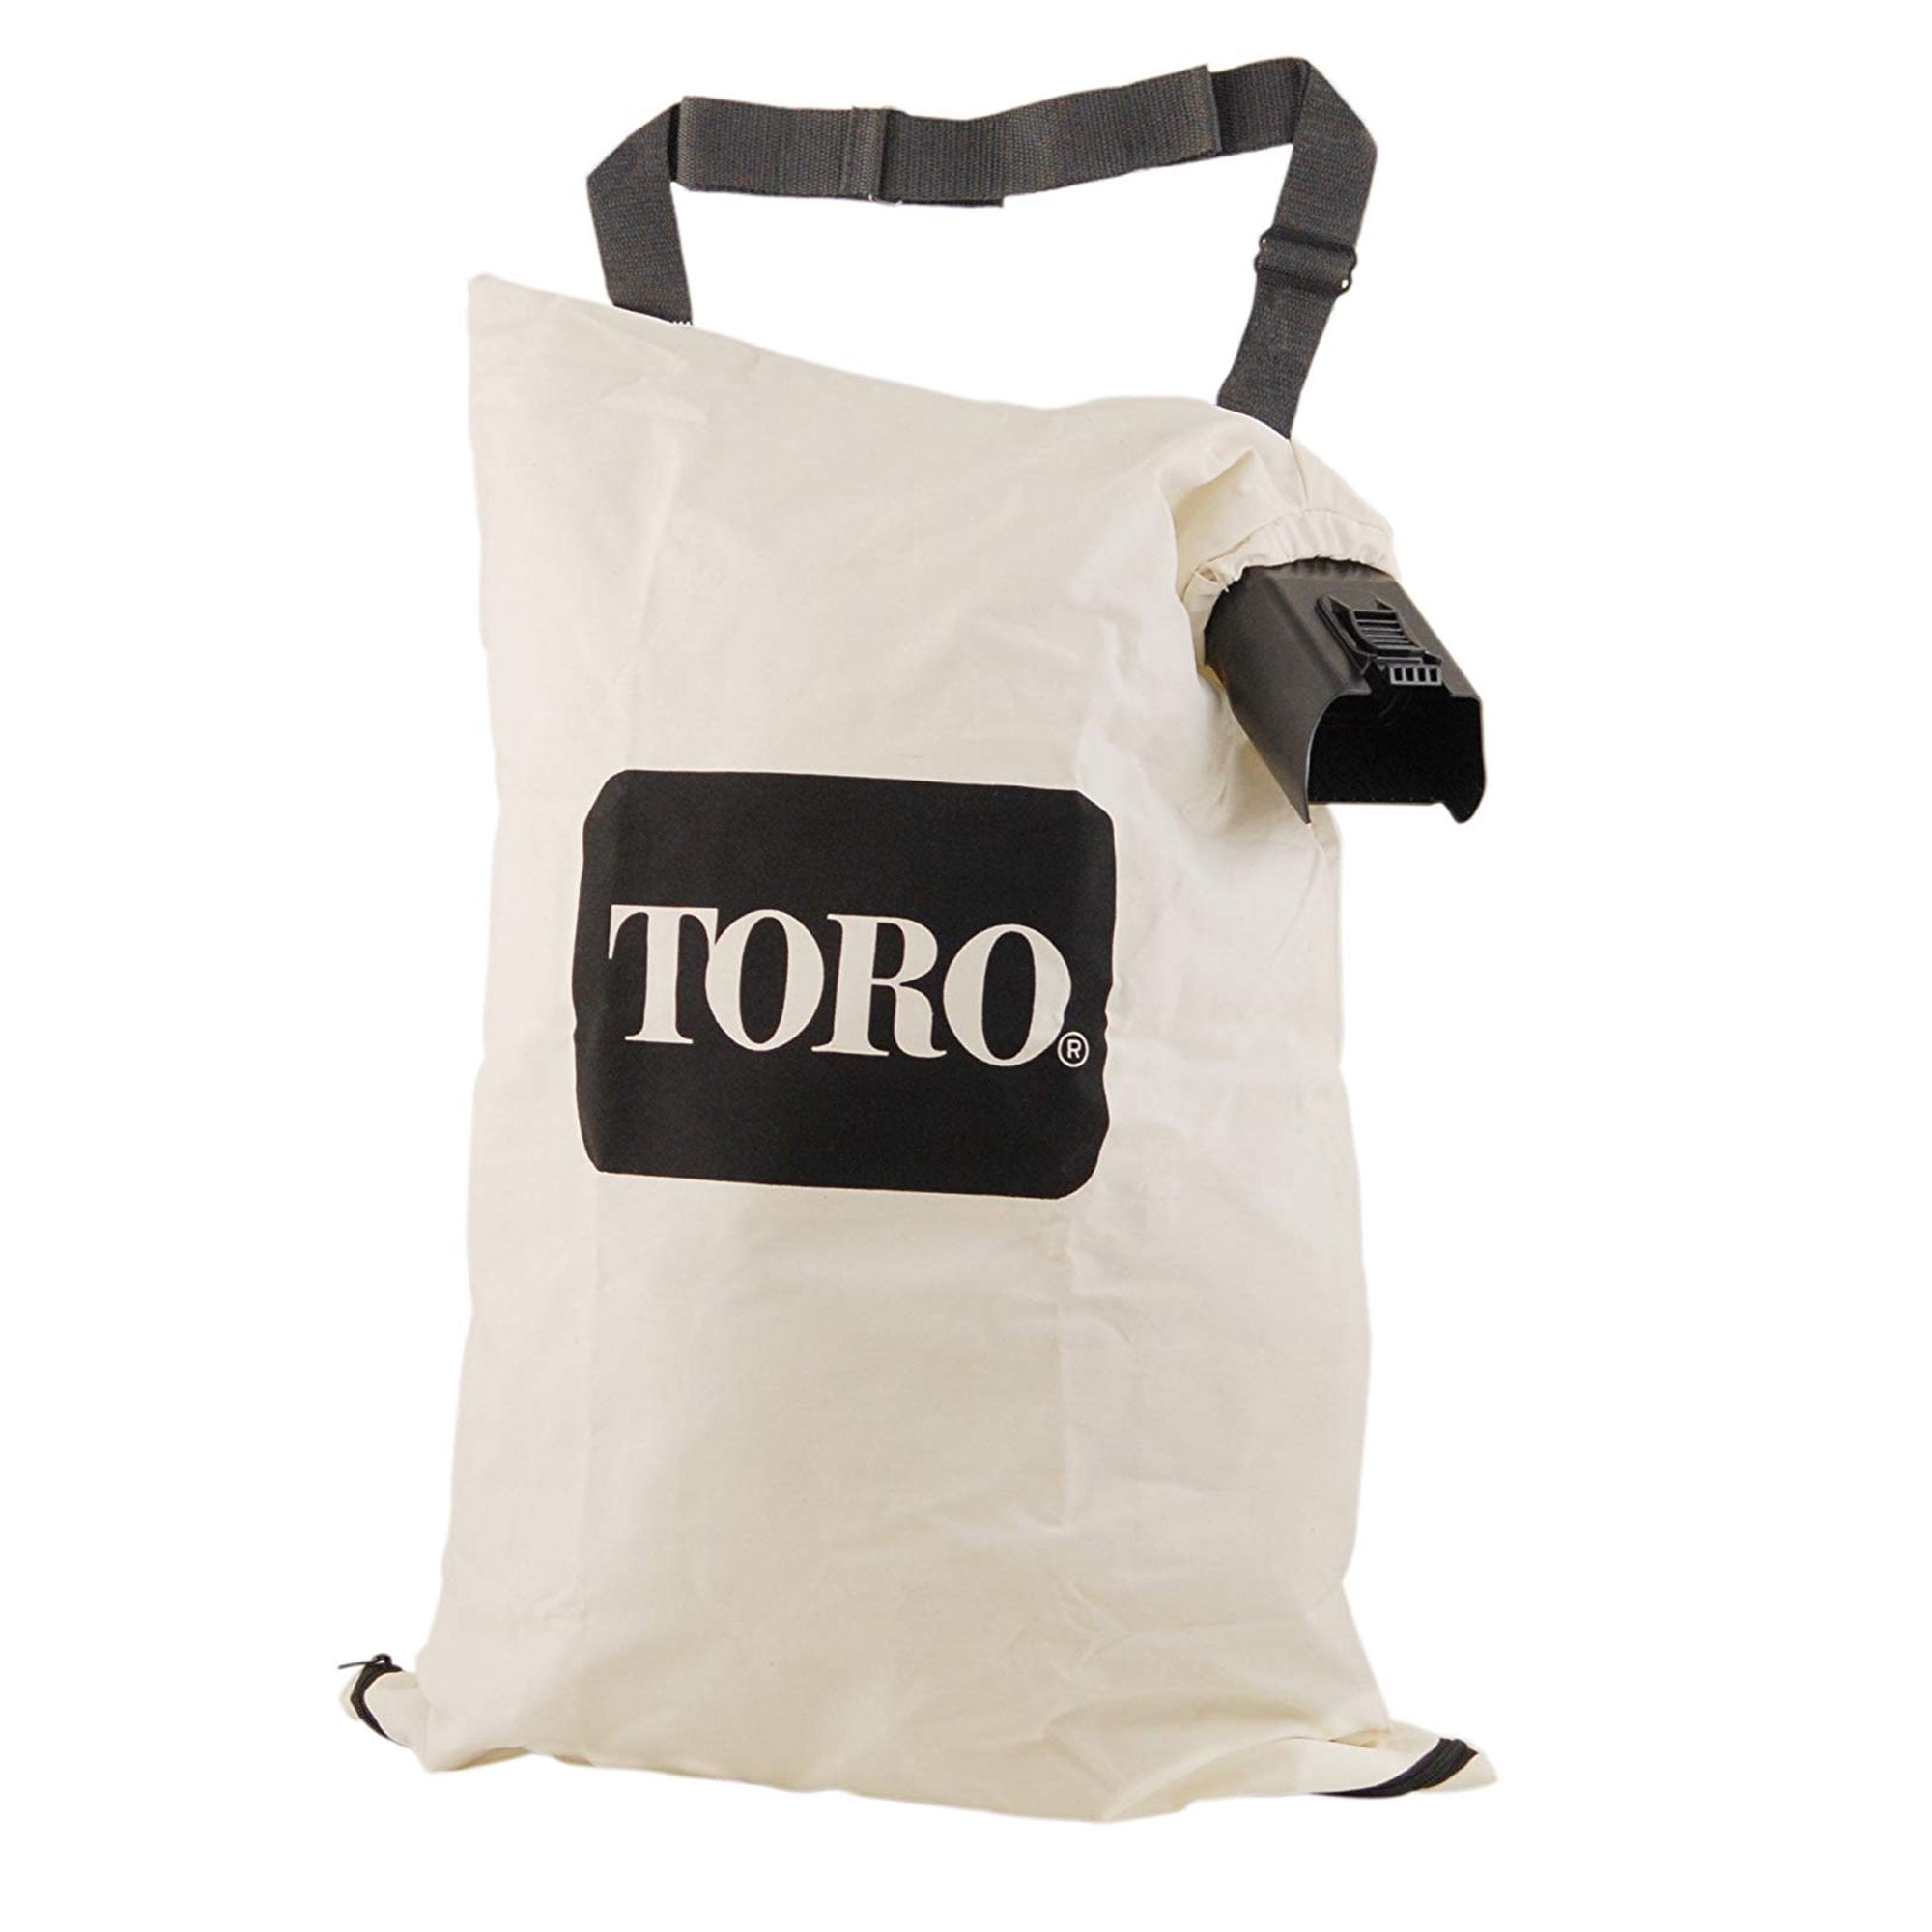 Toro Gutter Cleaning Kit 51574, 51592, 51599, 51602, 51609, 51617